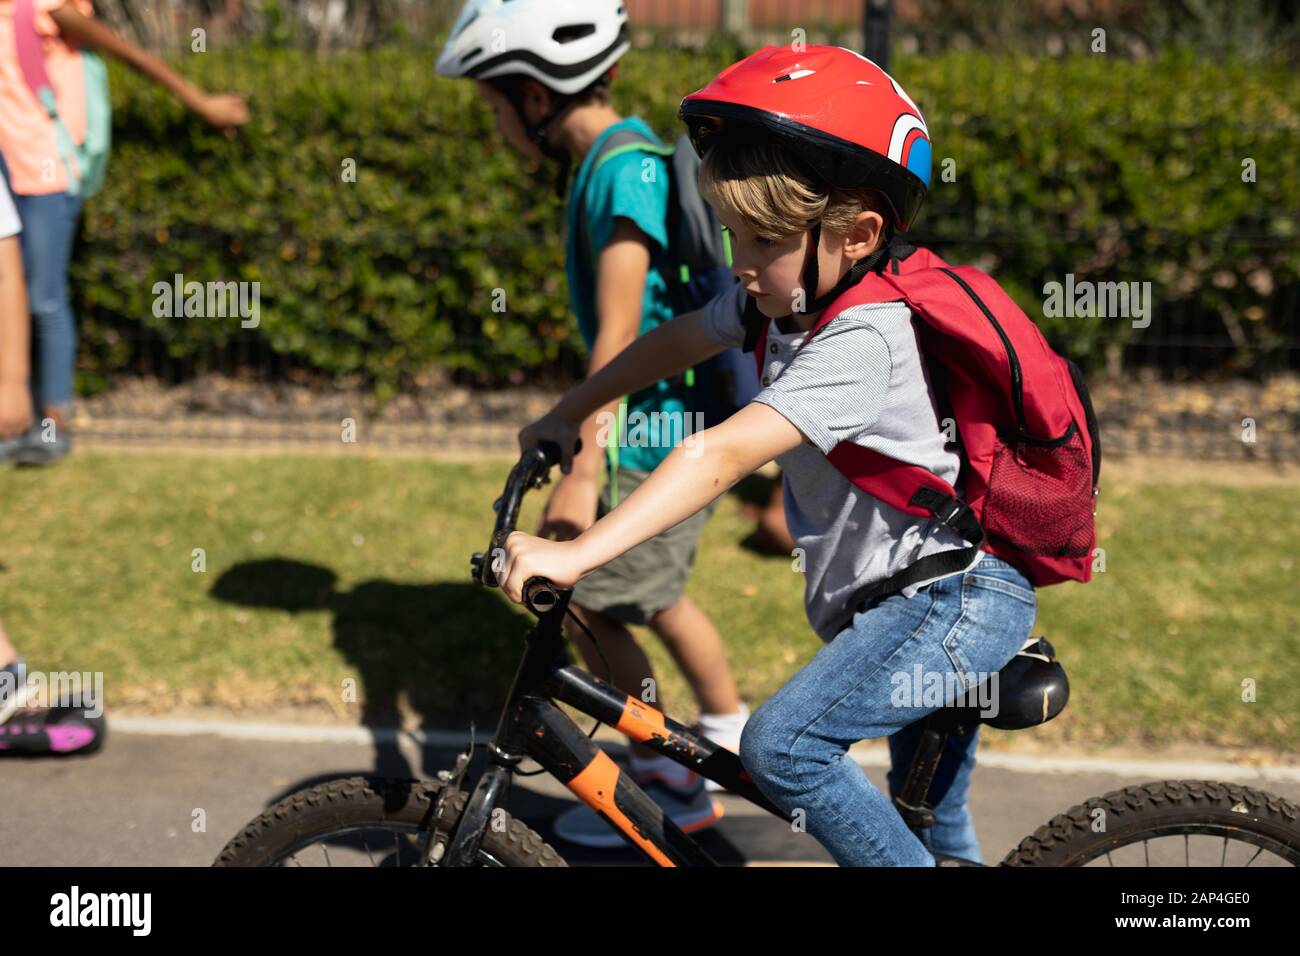 Niño escolar que lleva un casco de ciclismo y que monta en bicicleta Foto de stock